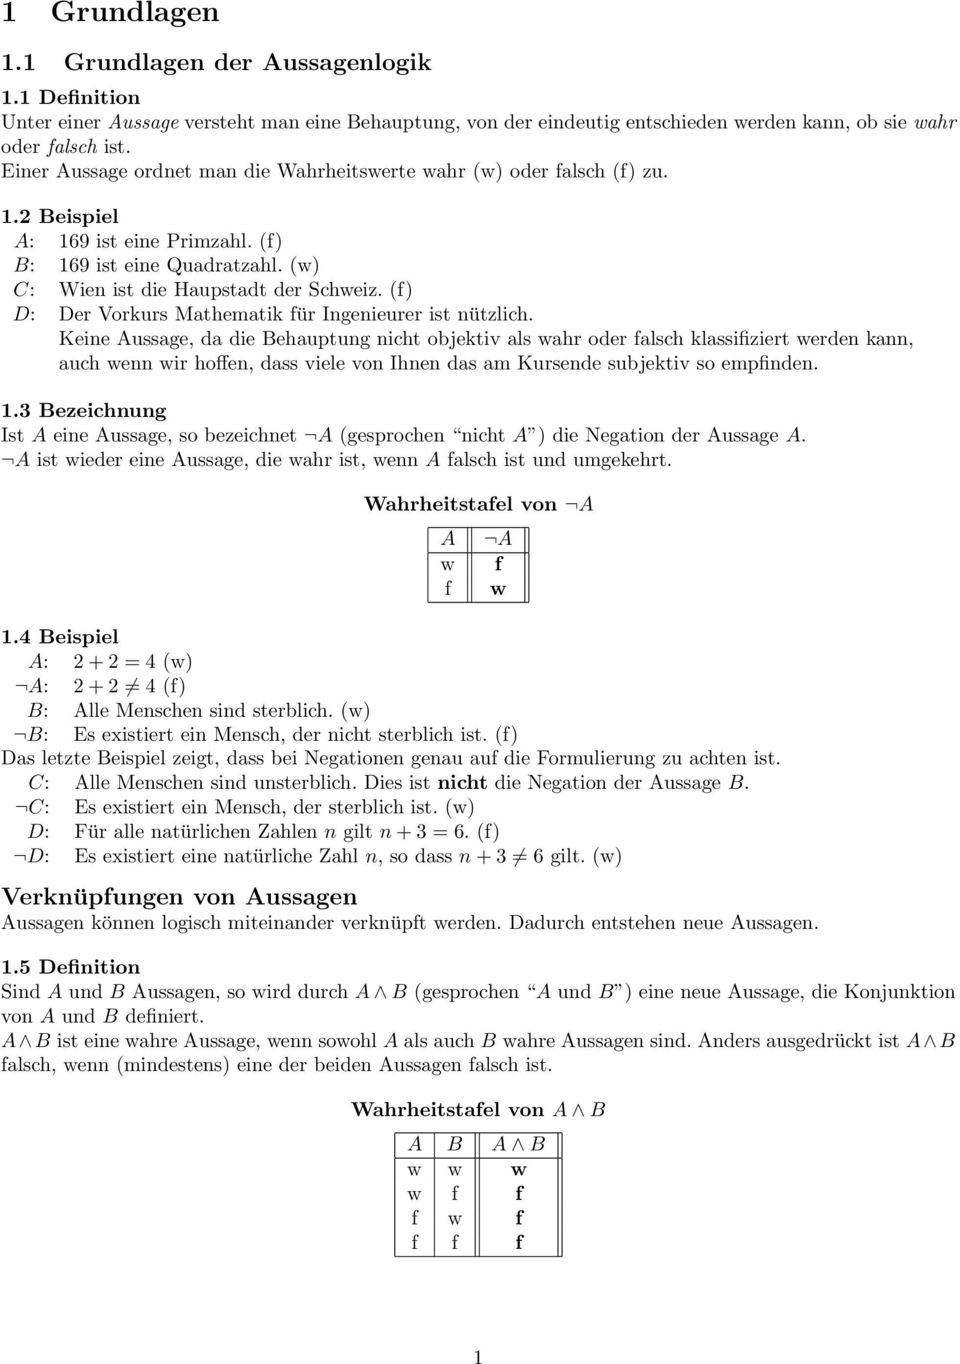 (f) D: Der Vorkurs Mathematik für Ingenieurer ist nützlich.